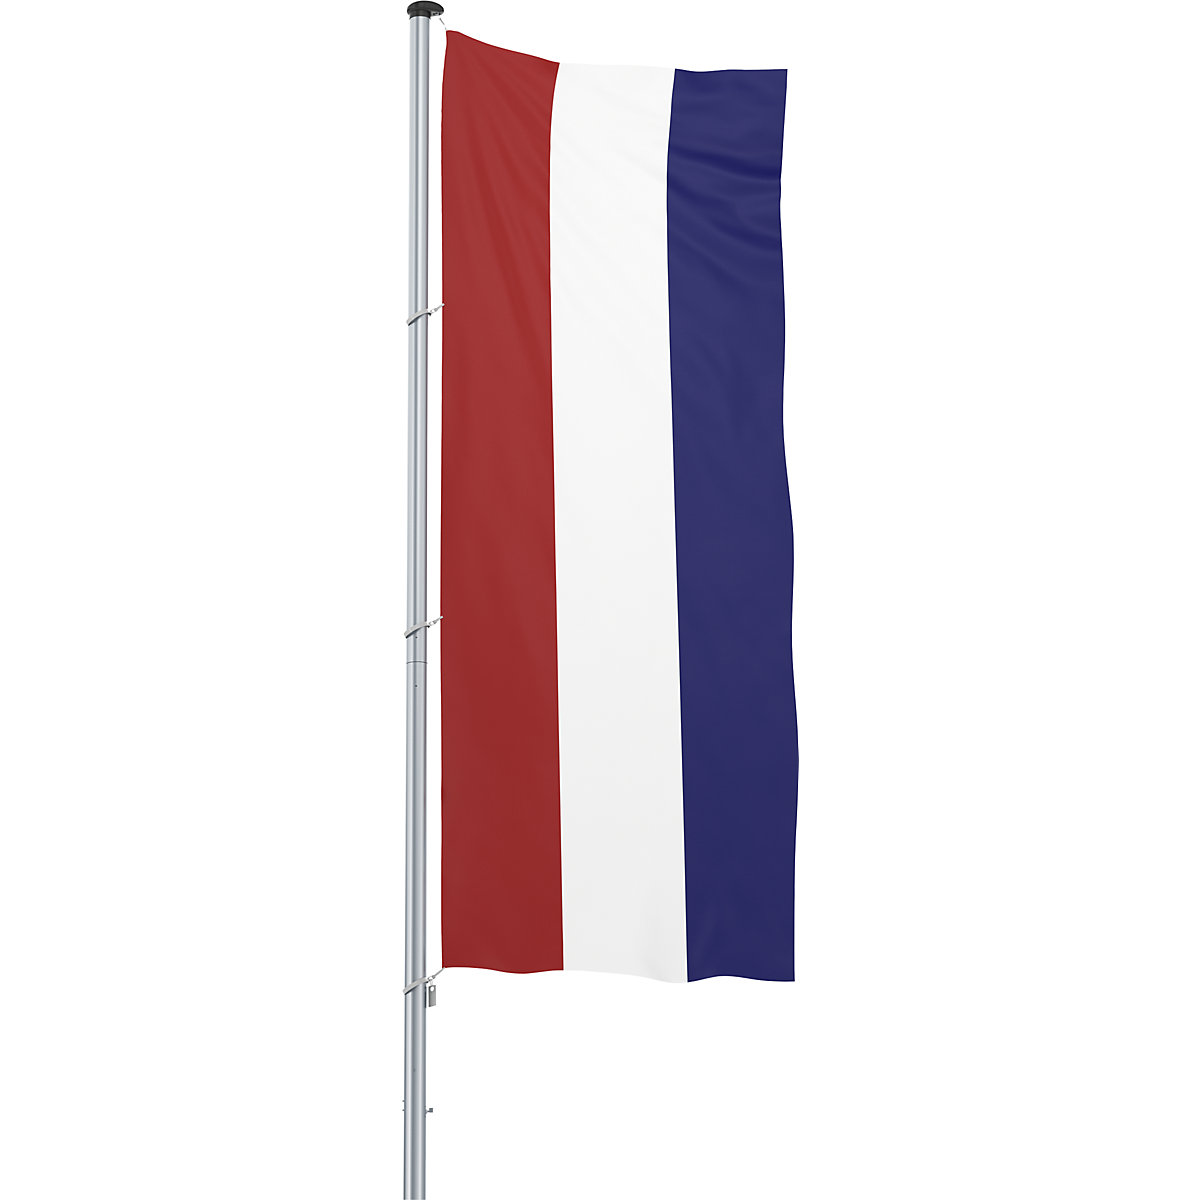 Hijsvlag/landvlag – Mannus, formaat 1,2 x 3 m, Nederland-12